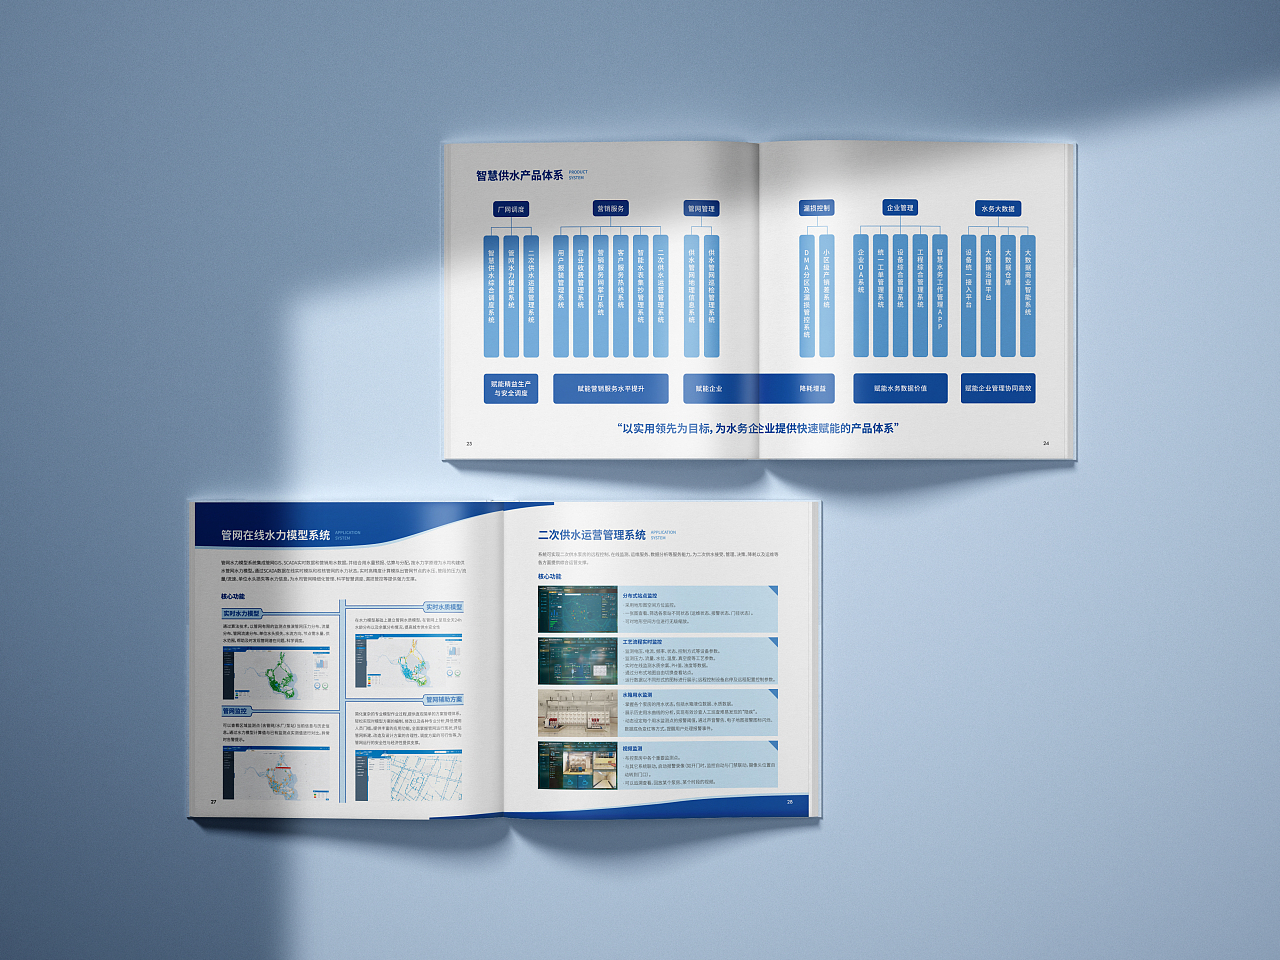 智慧供水画册 智慧水务画册 系列产品手册设计